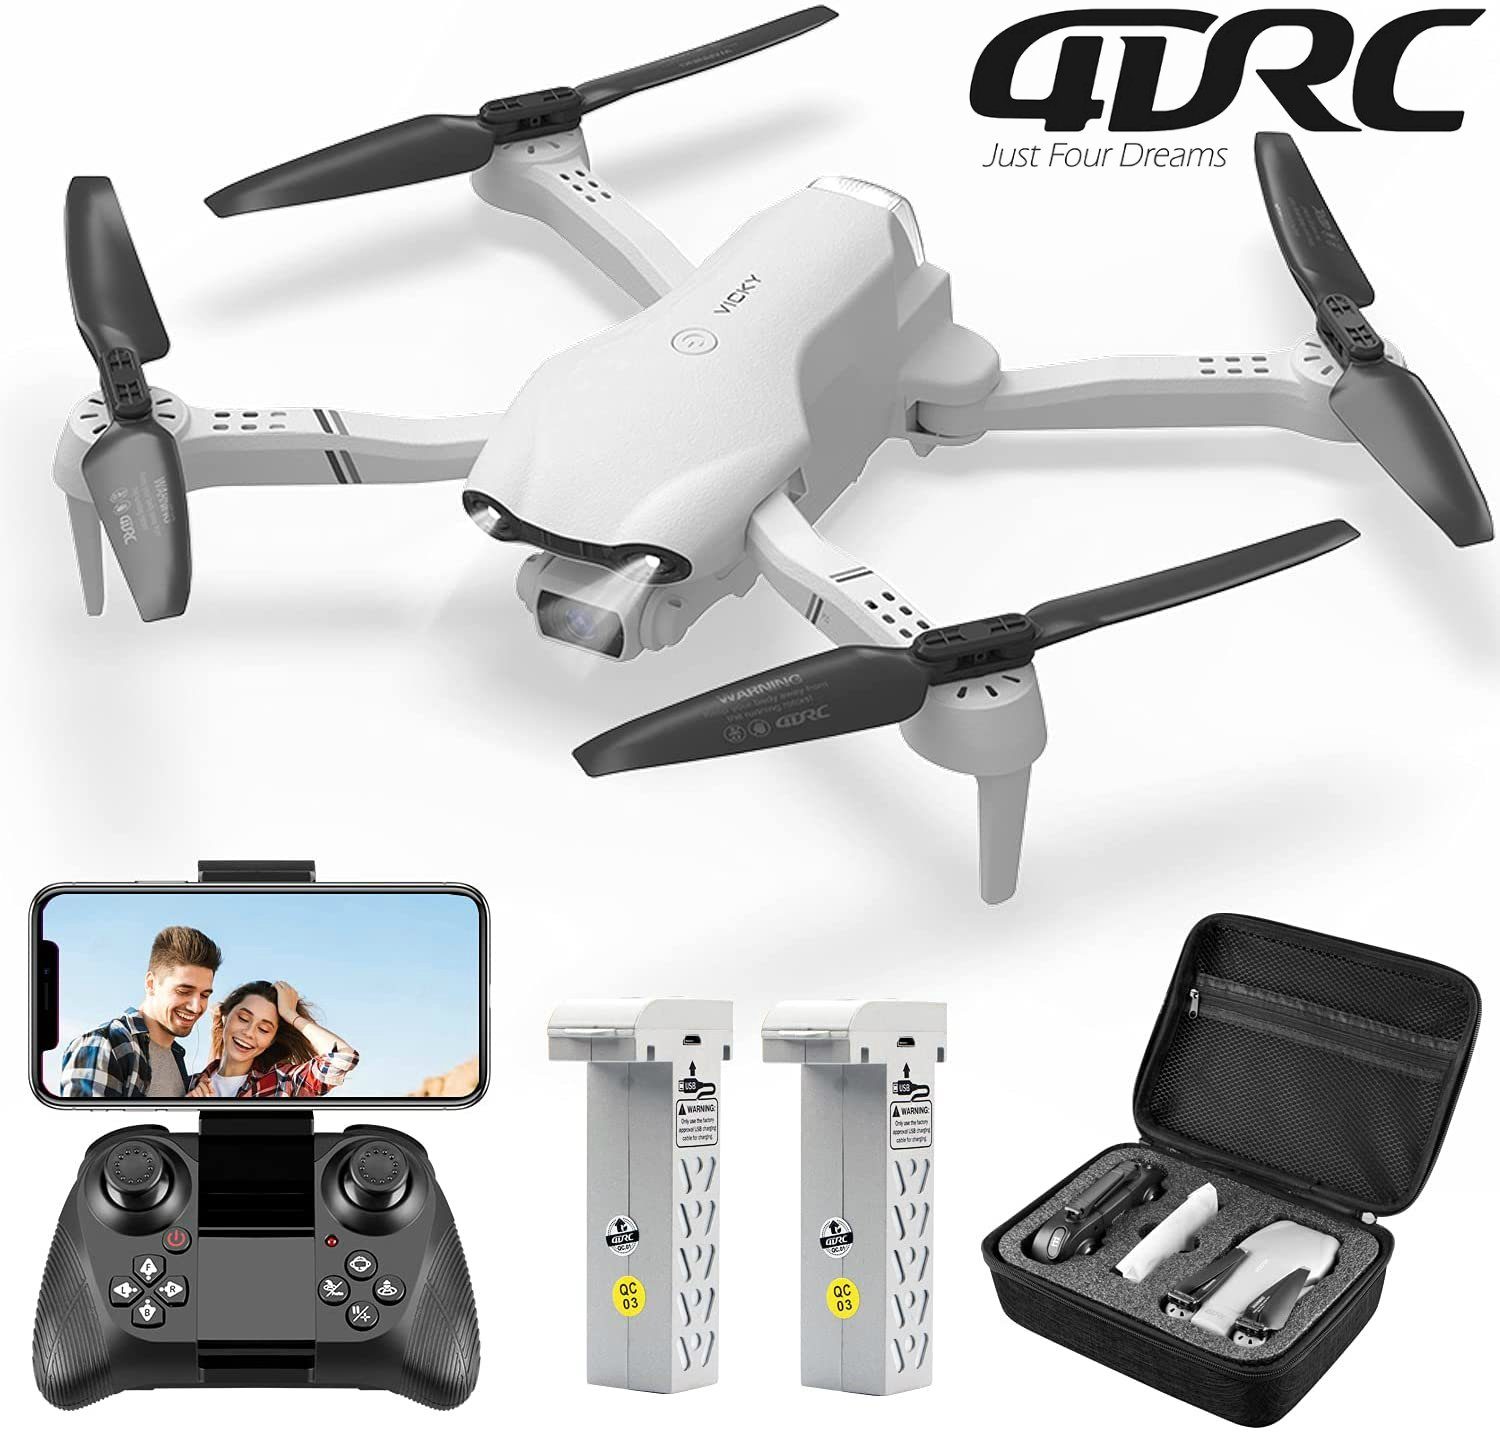 Quadcopter (1080P automatischer klappbarer Schwebeflug) Flugzeit, 32 4DRC Spielzeug-Drohne F10, für Anfänger, Kinder HD, FPV-Live-Video, Minuten & Weiß